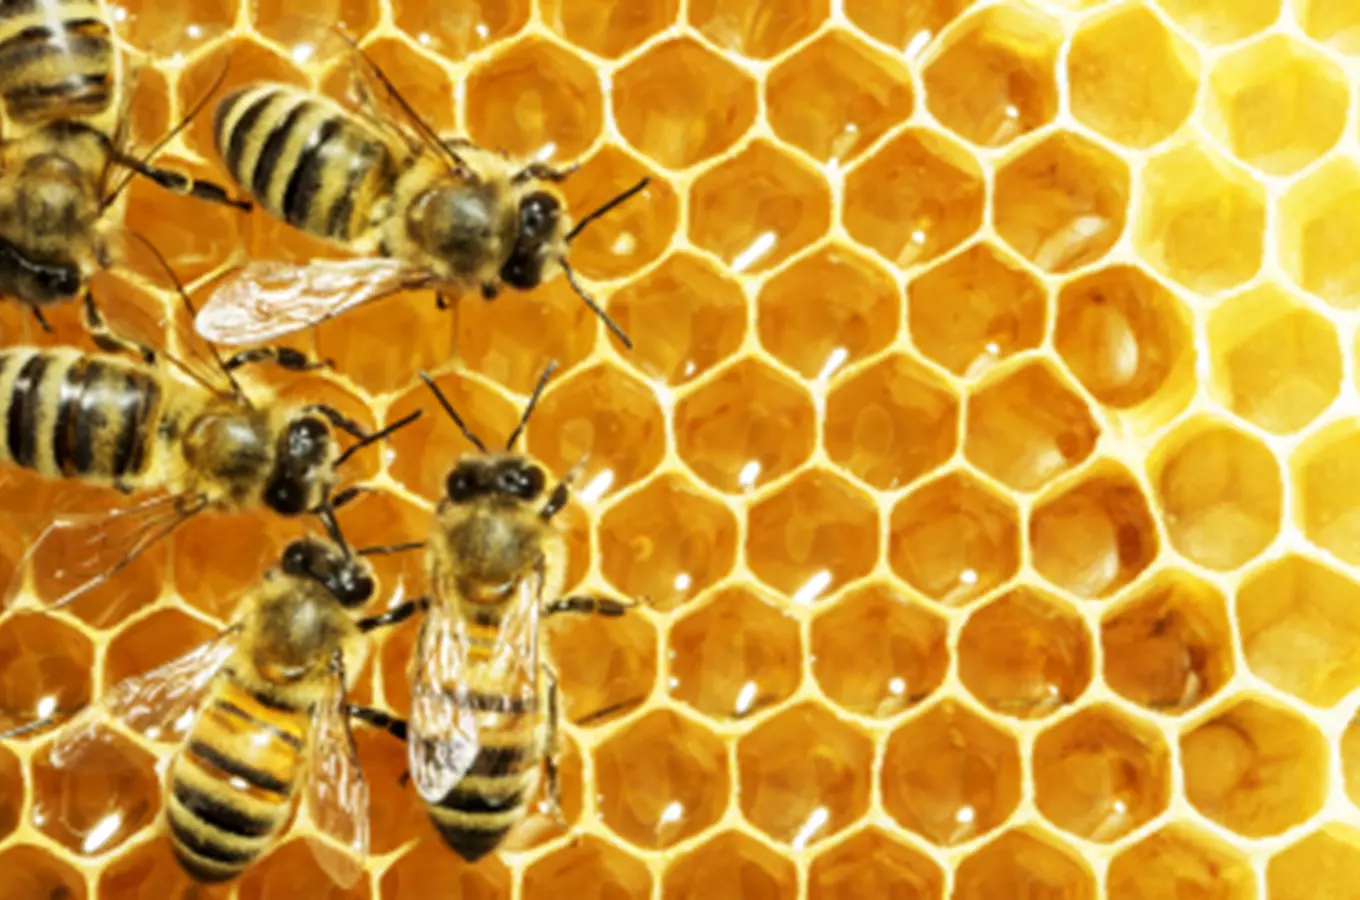 Fotografická a interaktivní výstava včel v pražské Troji